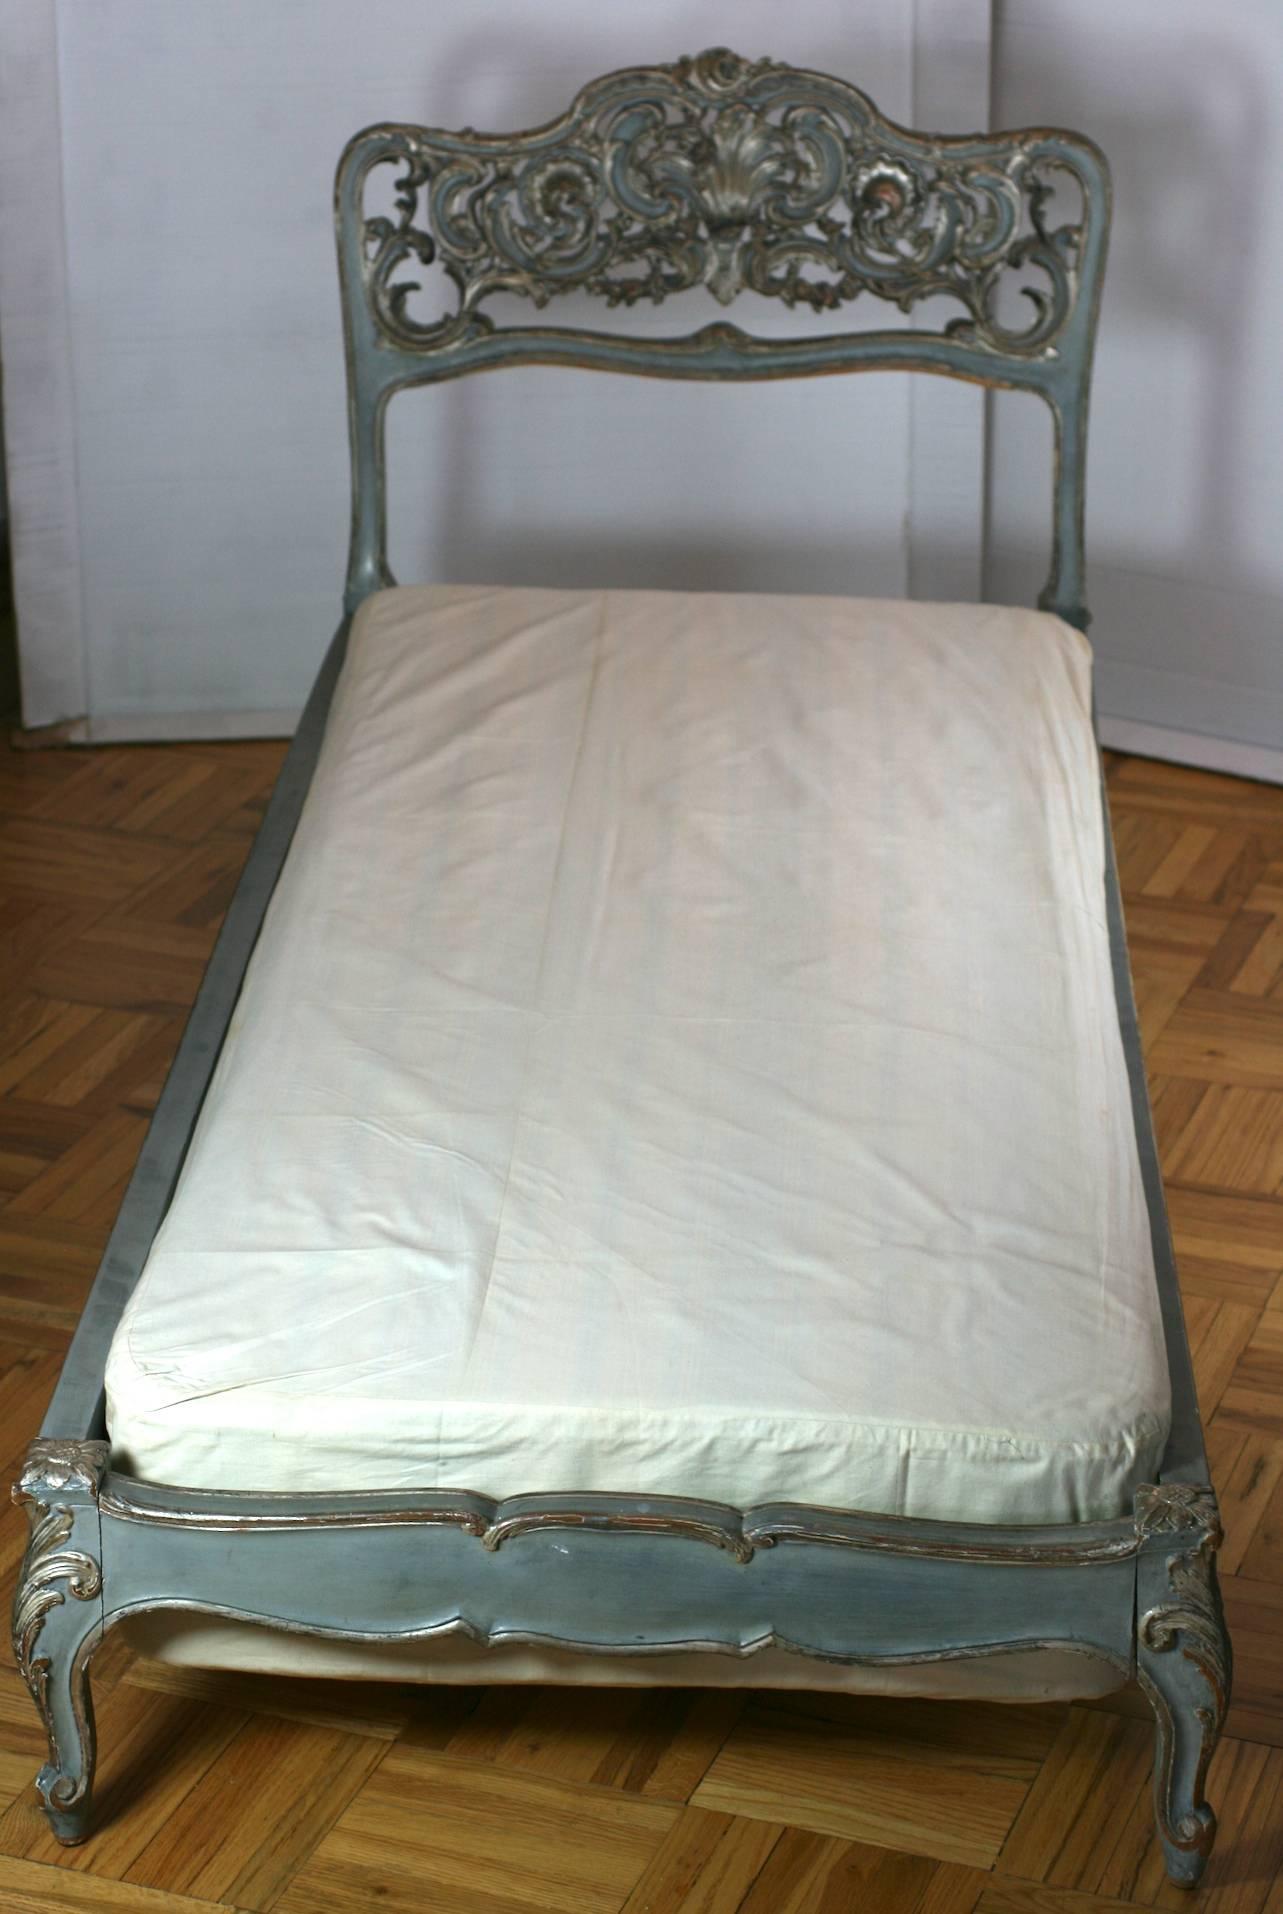 Venezianisches Tagesbett aus handgeschnitztem Holz mit silbernen, vergoldeten Akzenten auf venezianisch graublauem Grund. Verziertes Rokoko-Schnitzwerk, hervorgehoben durch Silbervergoldung und schöne weiche Farbgebung.
Die Größe kann auch als